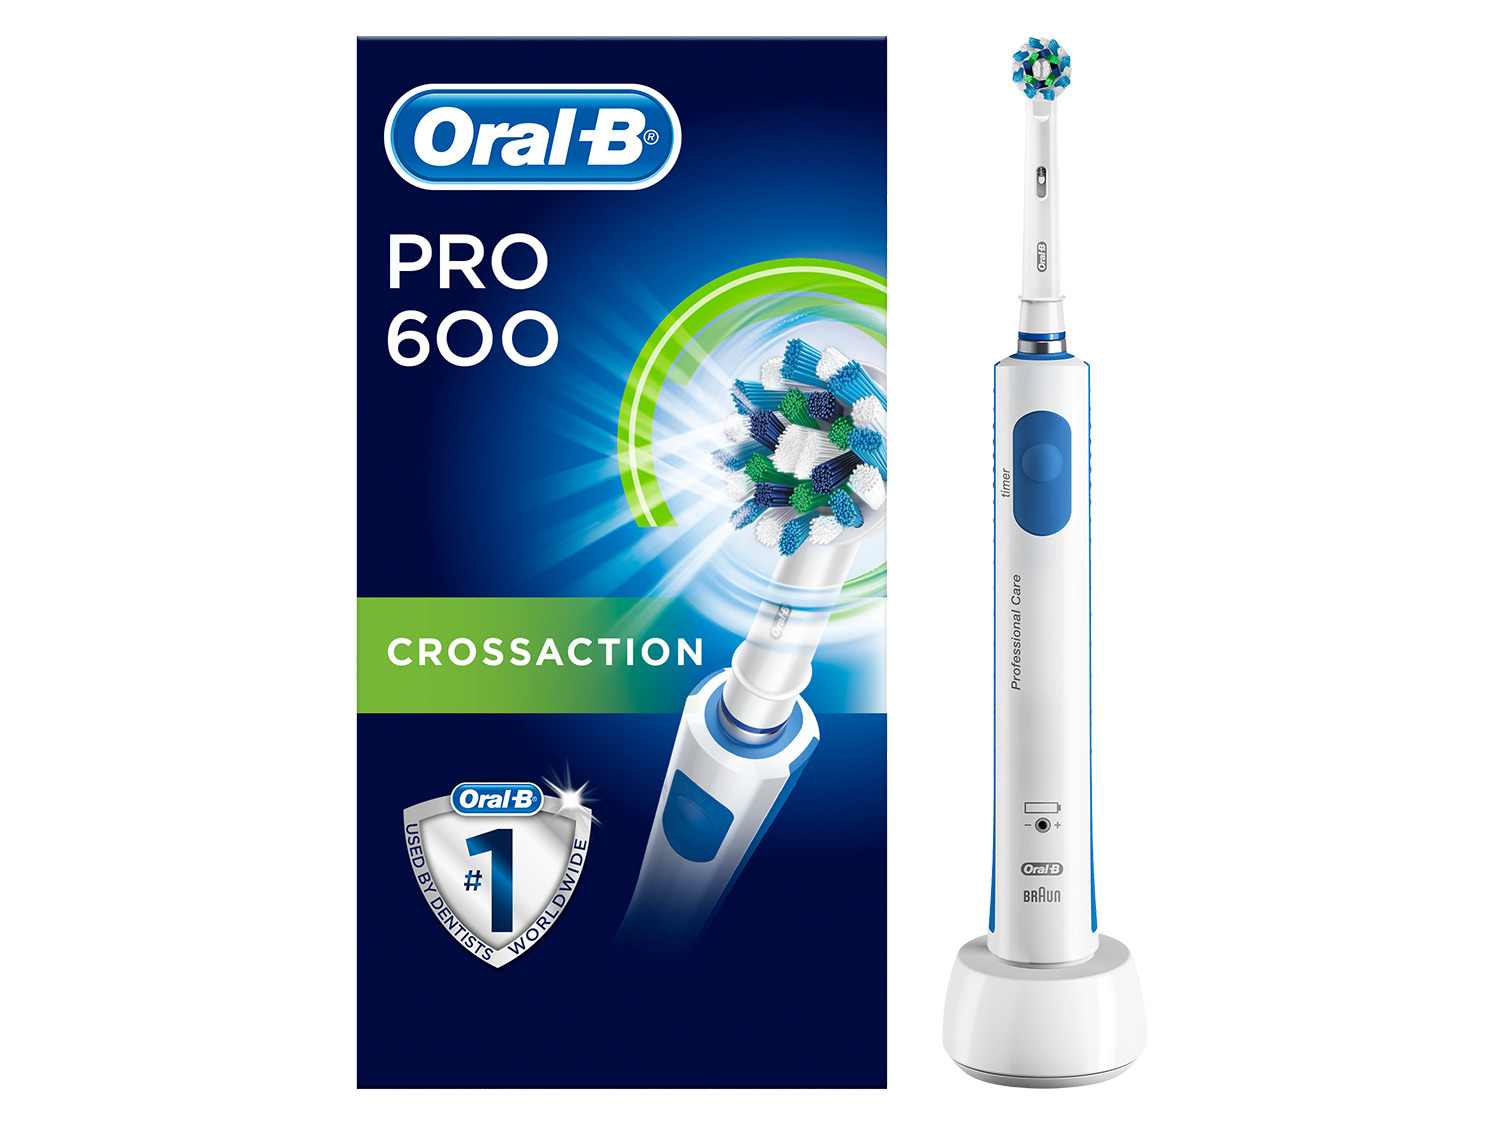 Versterker Verwoesten lelijk Oral-B Elektrische tandenborstel Pro 600 | LIDL